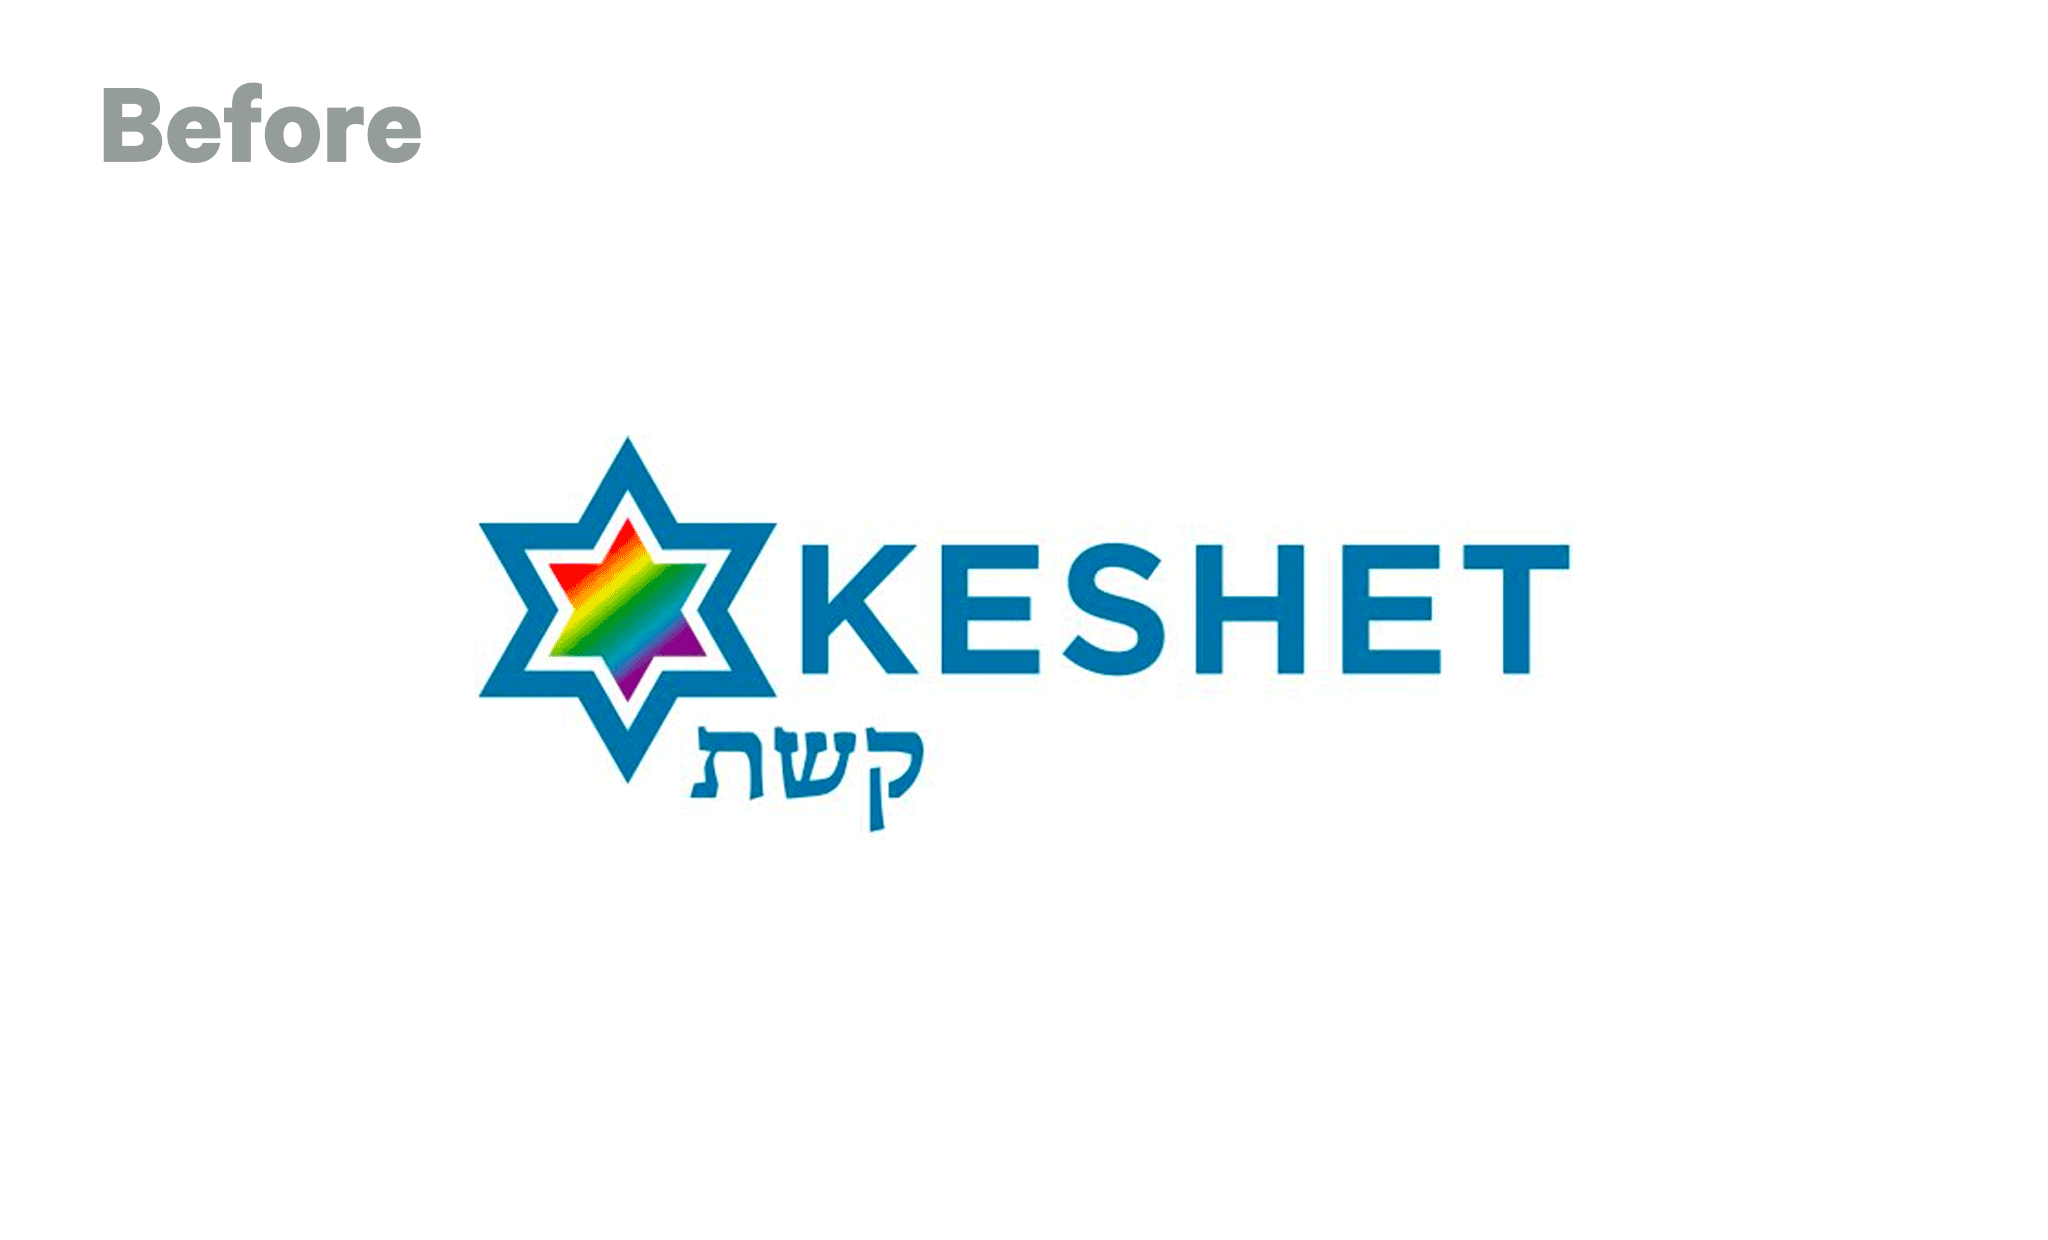 Keshet-Logo_before-after